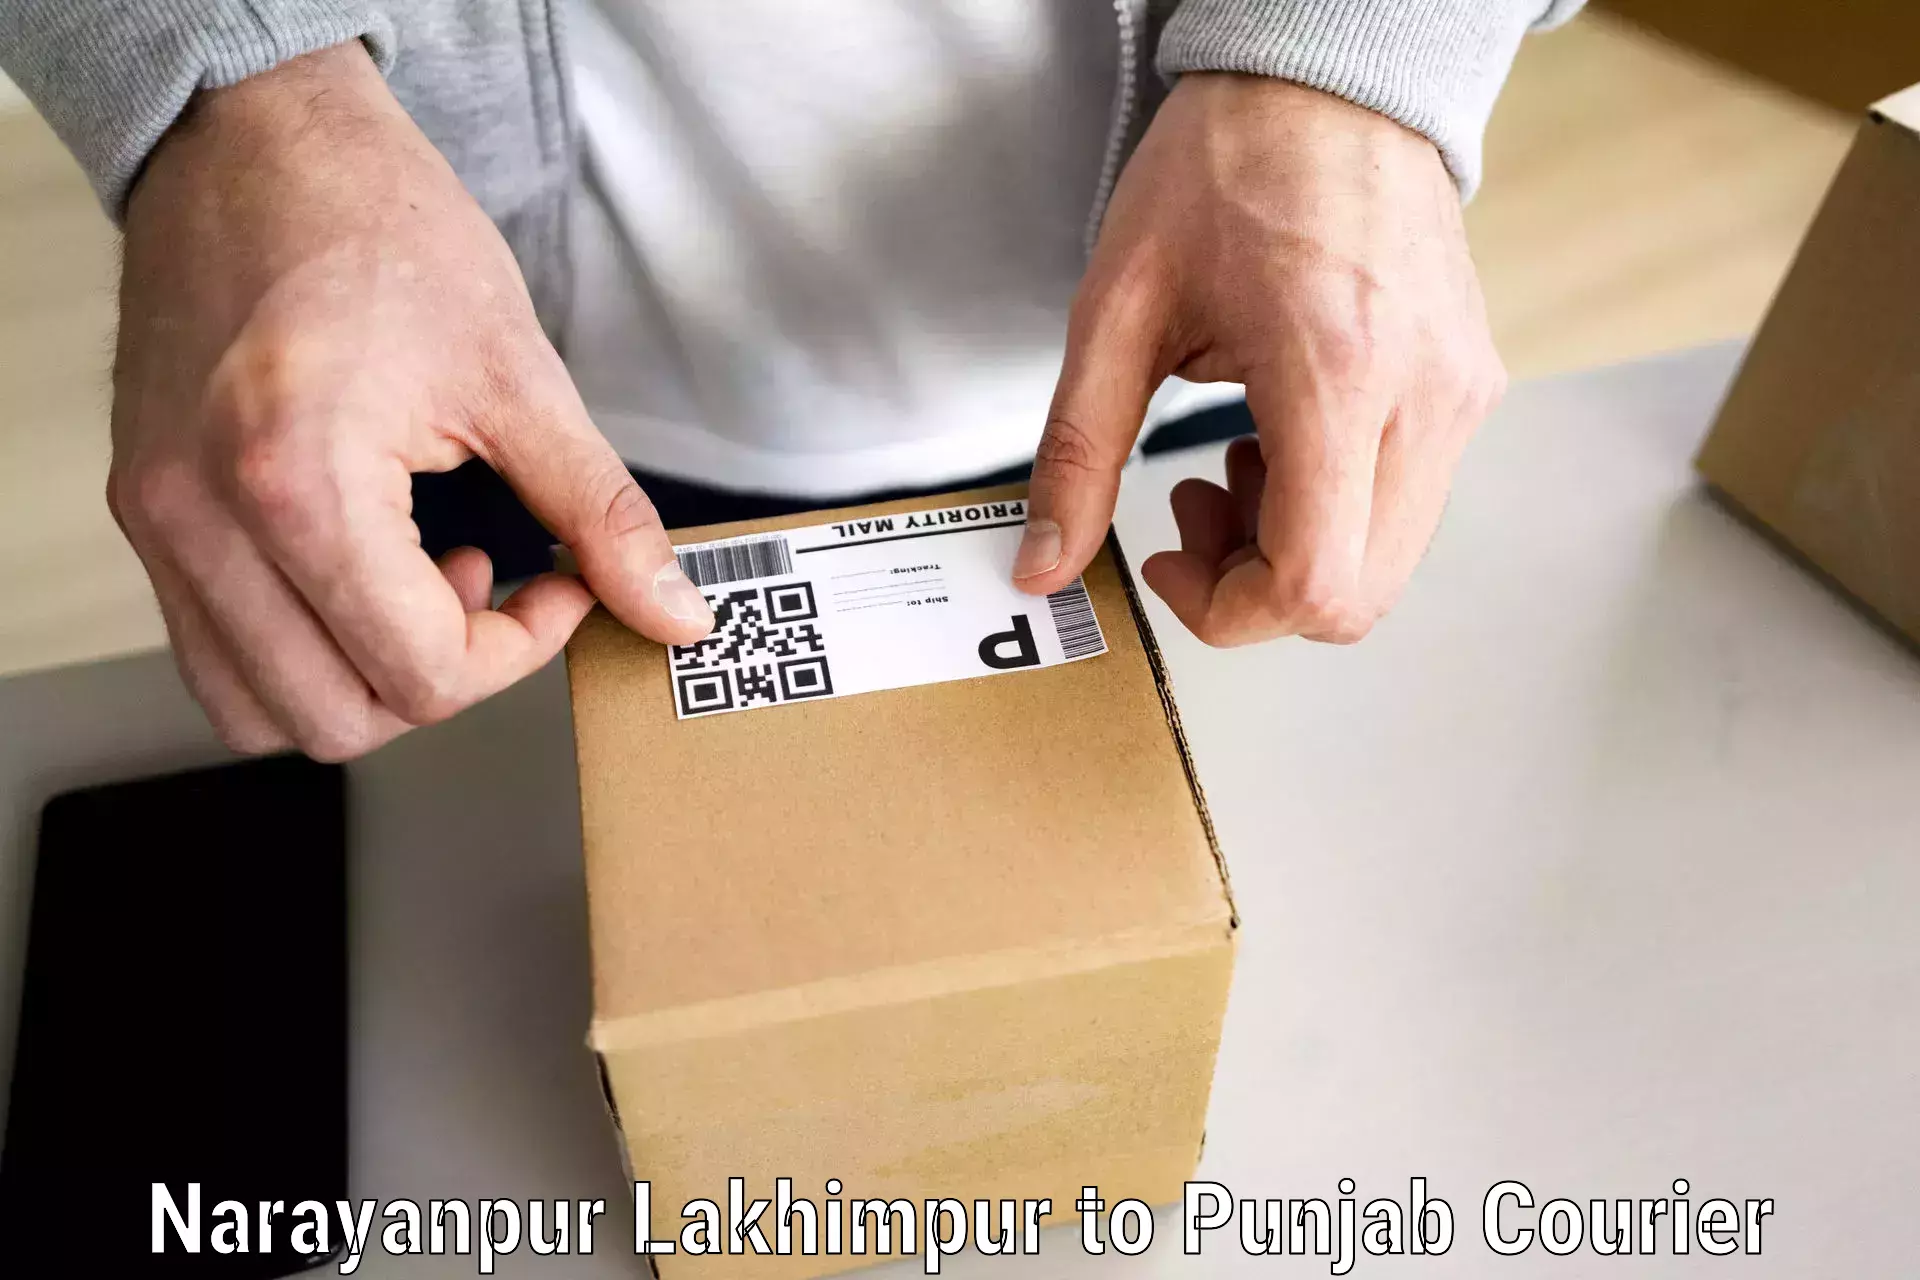 Skilled furniture movers Narayanpur Lakhimpur to Mandi Gobindgarh